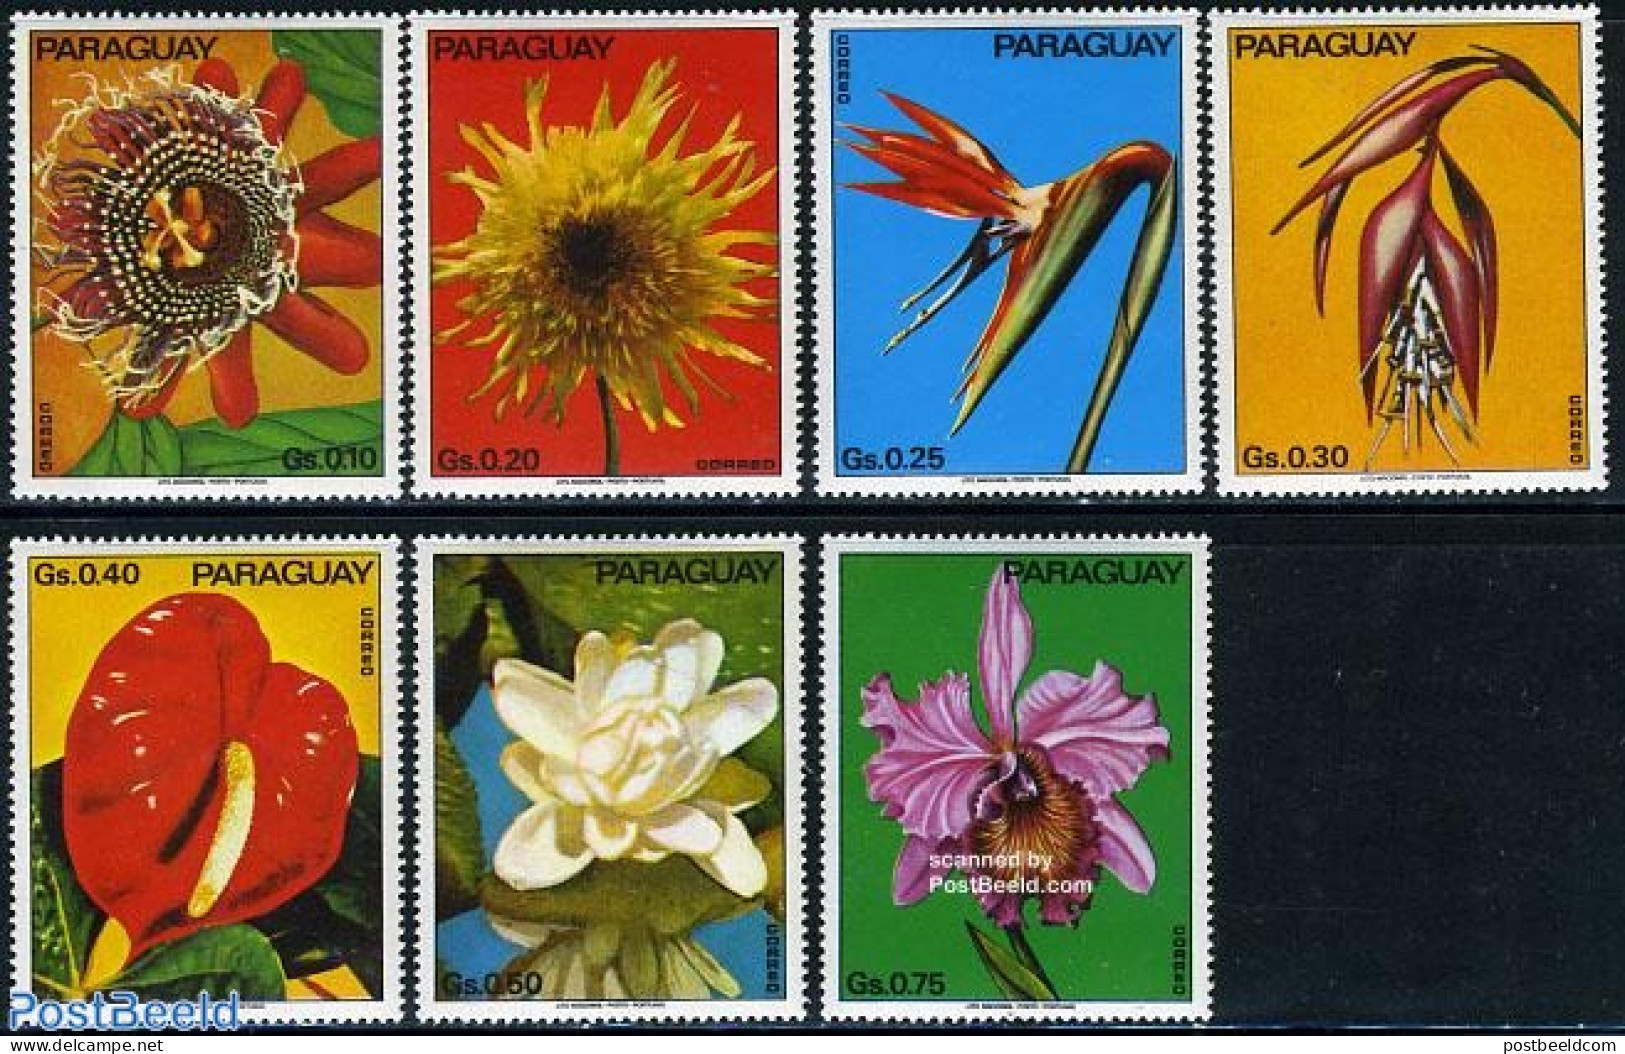 Paraguay 1973 Flowers 7v, Mint NH, Nature - Flowers & Plants - Paraguay